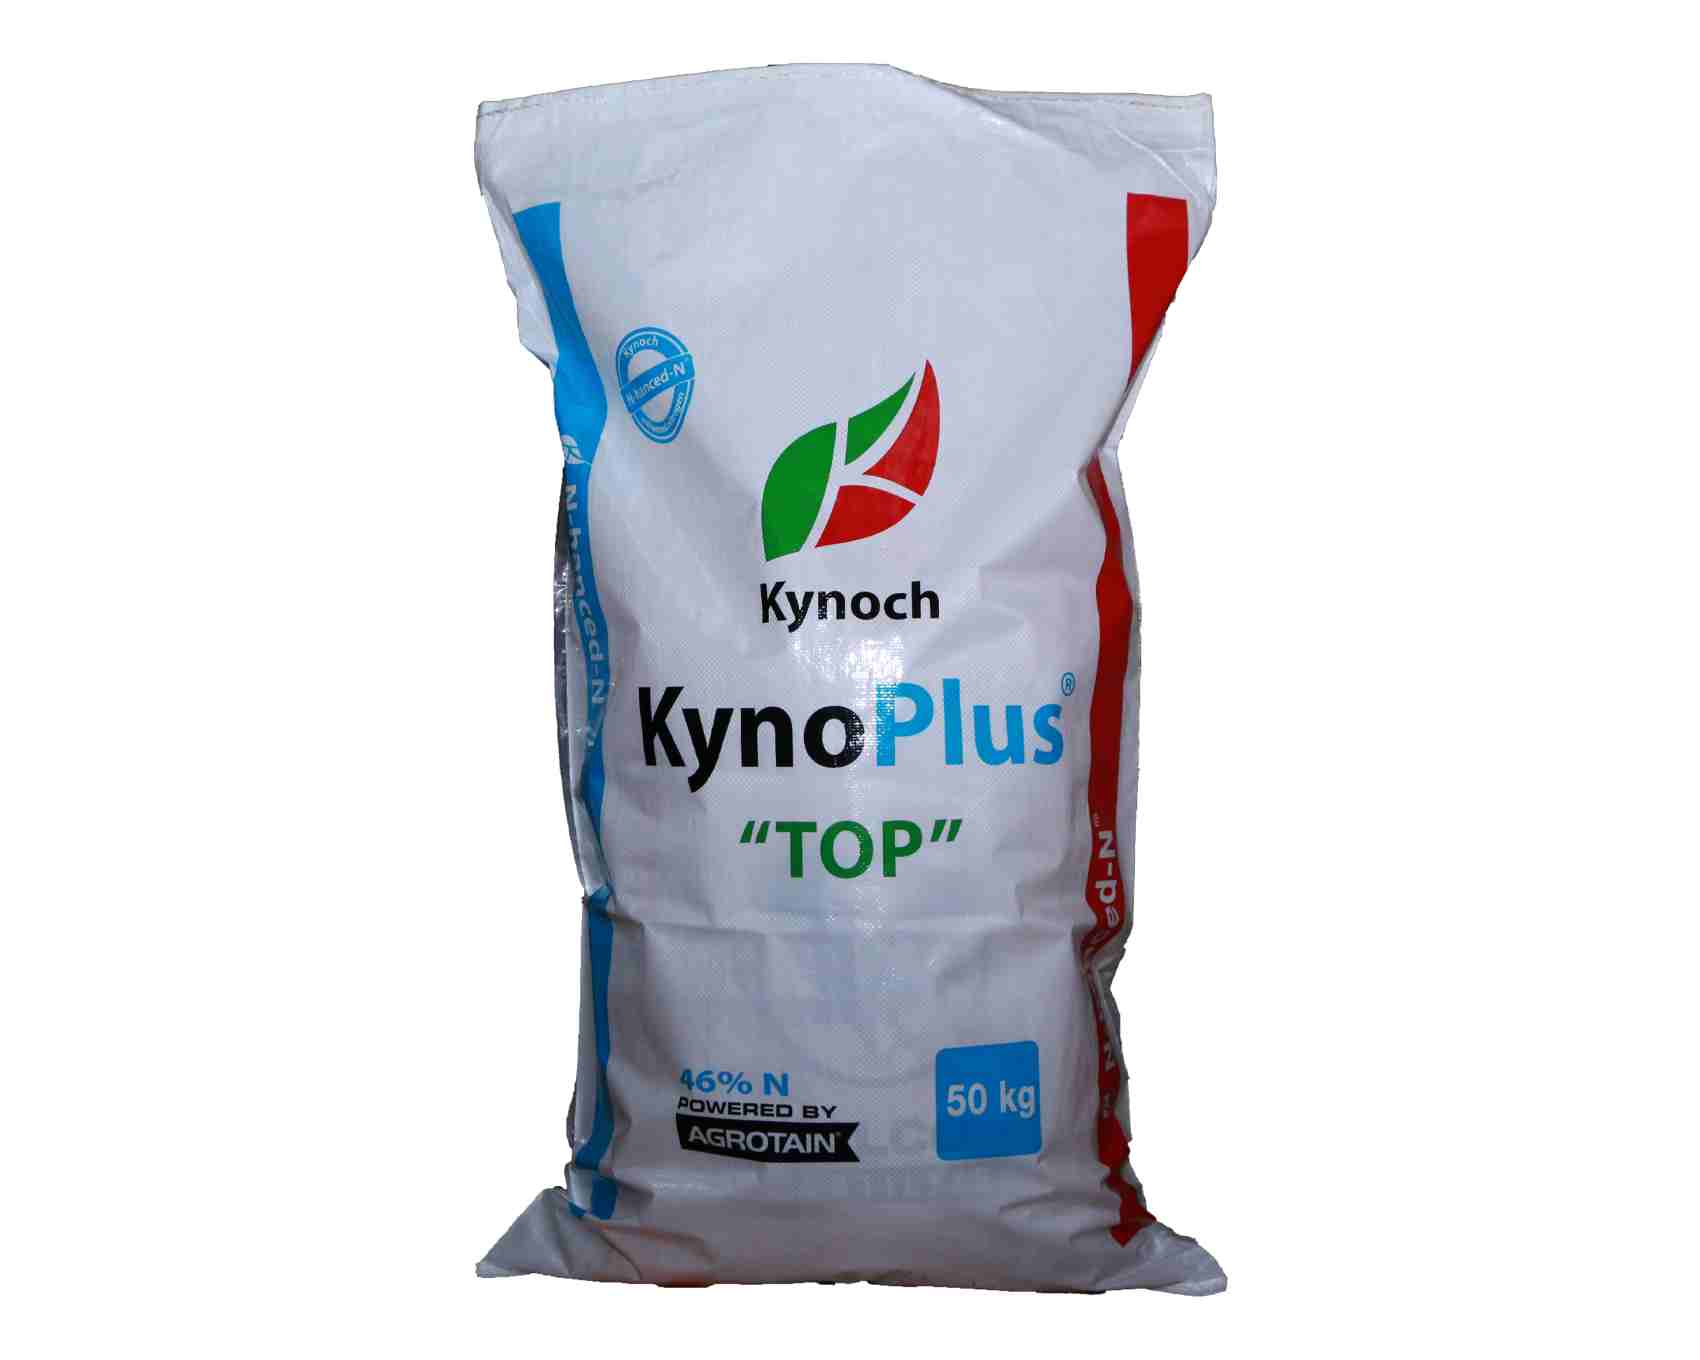 Kynoplus Top